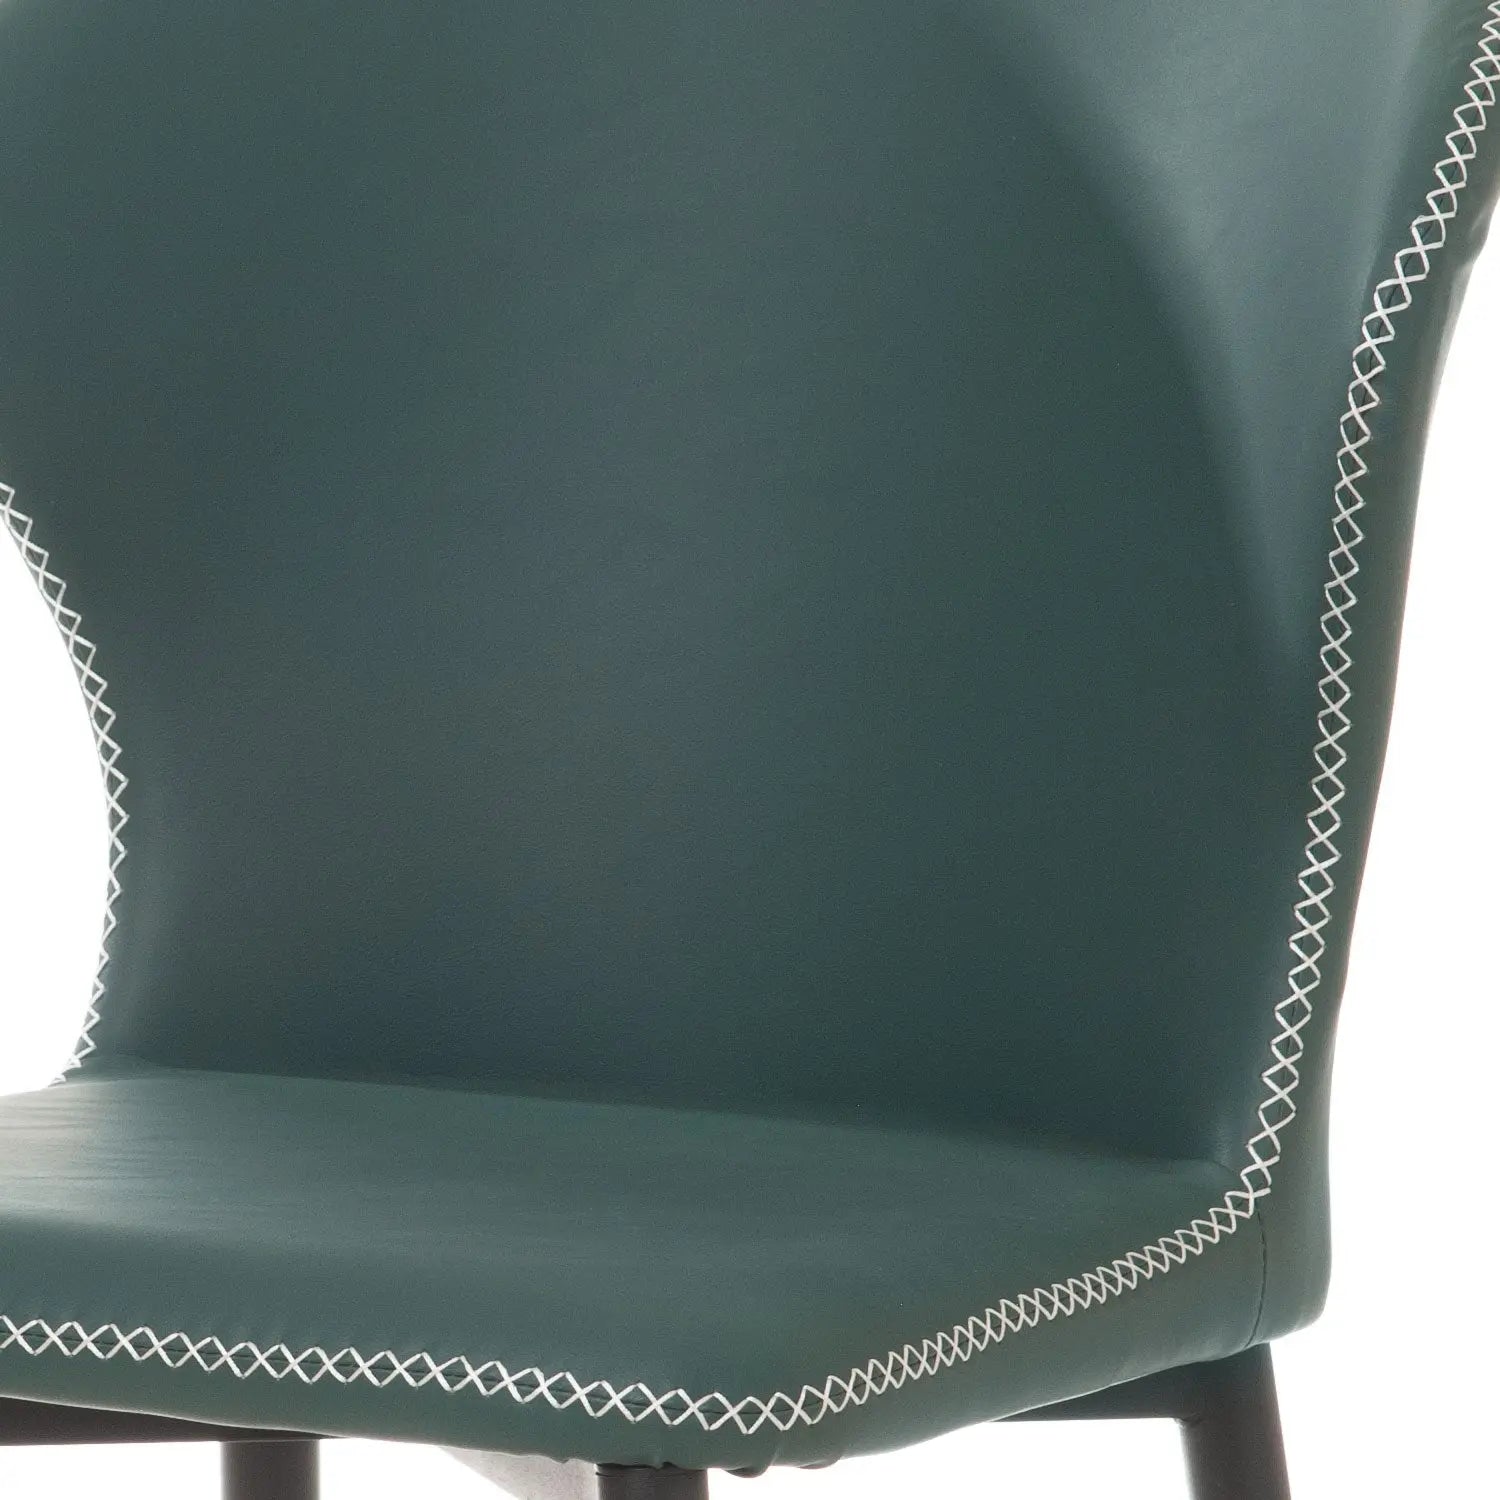 Homedock Kit com 2 Cadeiras Cyntia - PU Verde Juniper c/ Preto Dowell